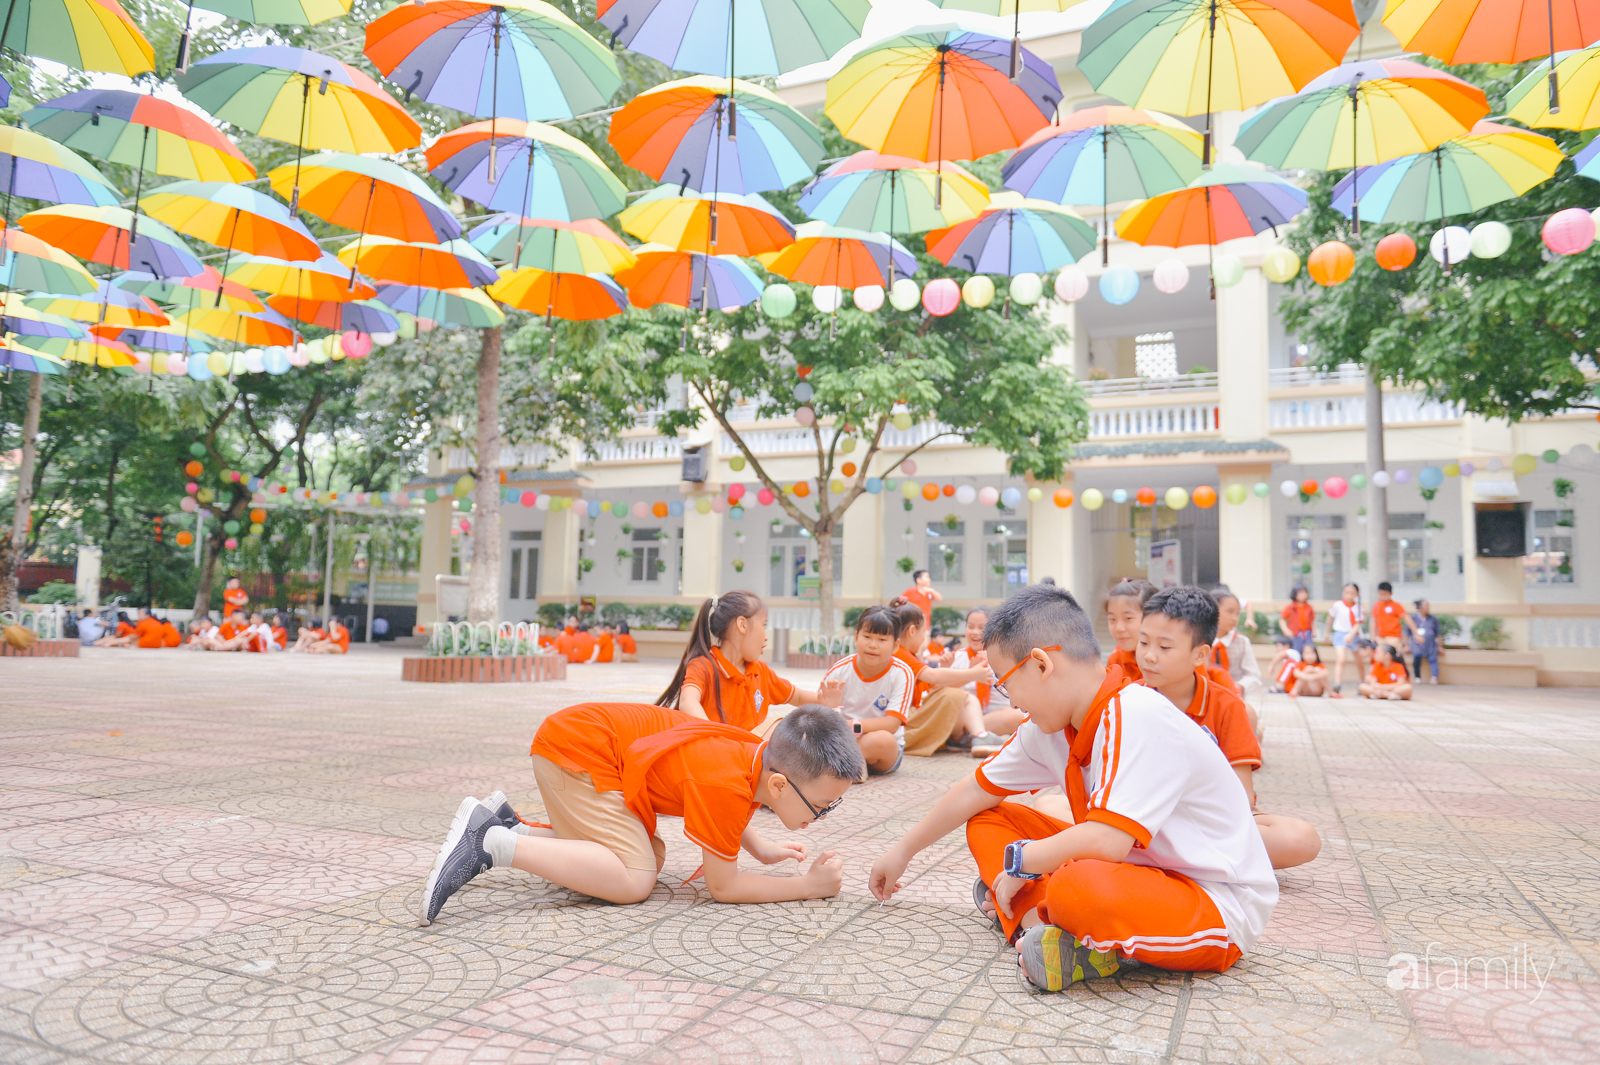 Trường tiểu học ở Hà Nội trang trí nổi bật cả vùng trời, học sinh phấn khích như đi hội, ai đi ngang qua cũng phải ngước nhìn-19